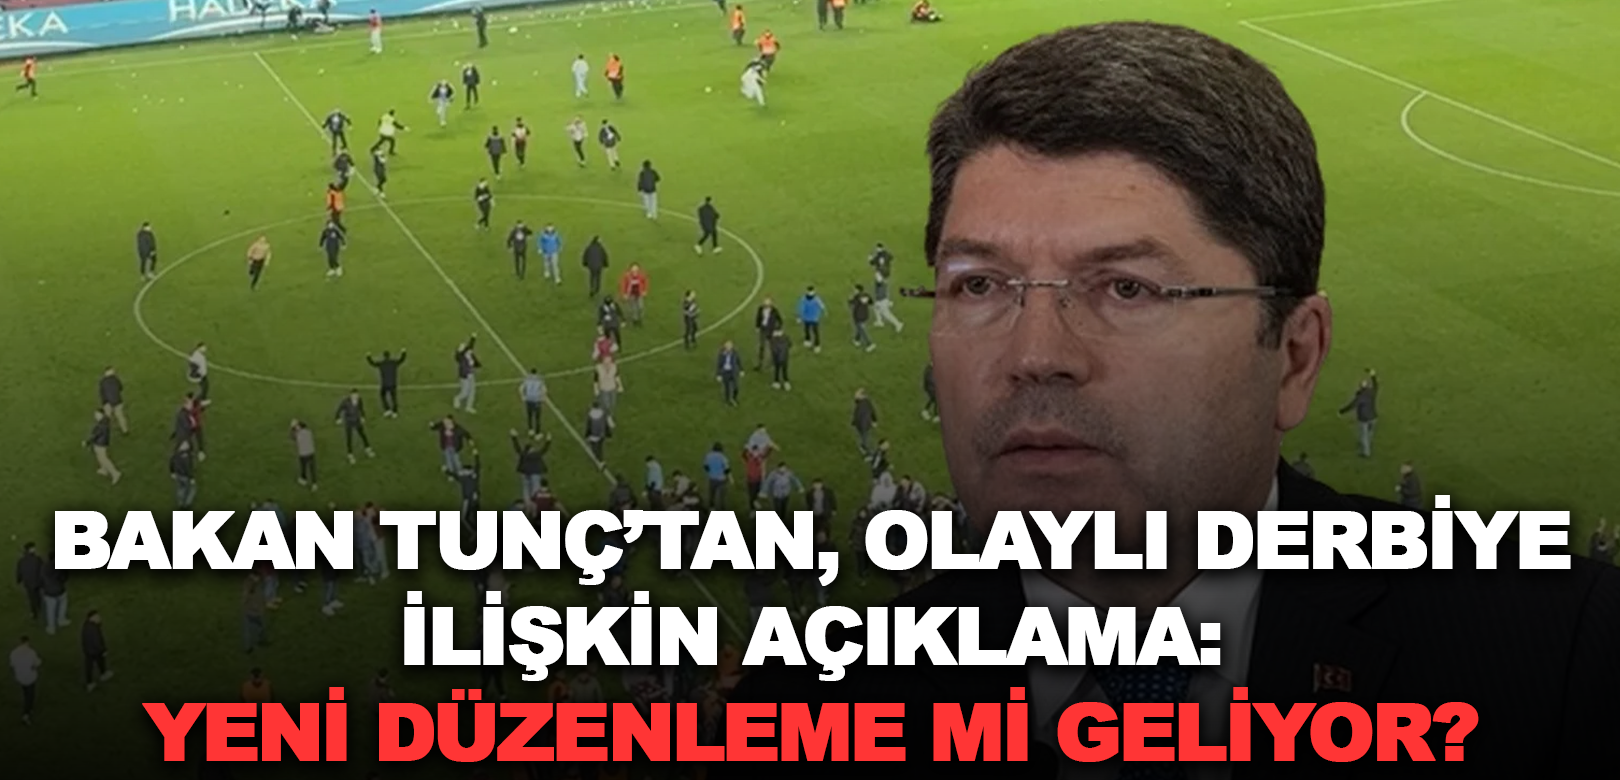 Adalet Bakanı Tunç'tan Trabzonspor-Fenerbahçe maçındaki olaylara ilişkin açıklama: Olayları siyasete alet etmek hiç doğru değil